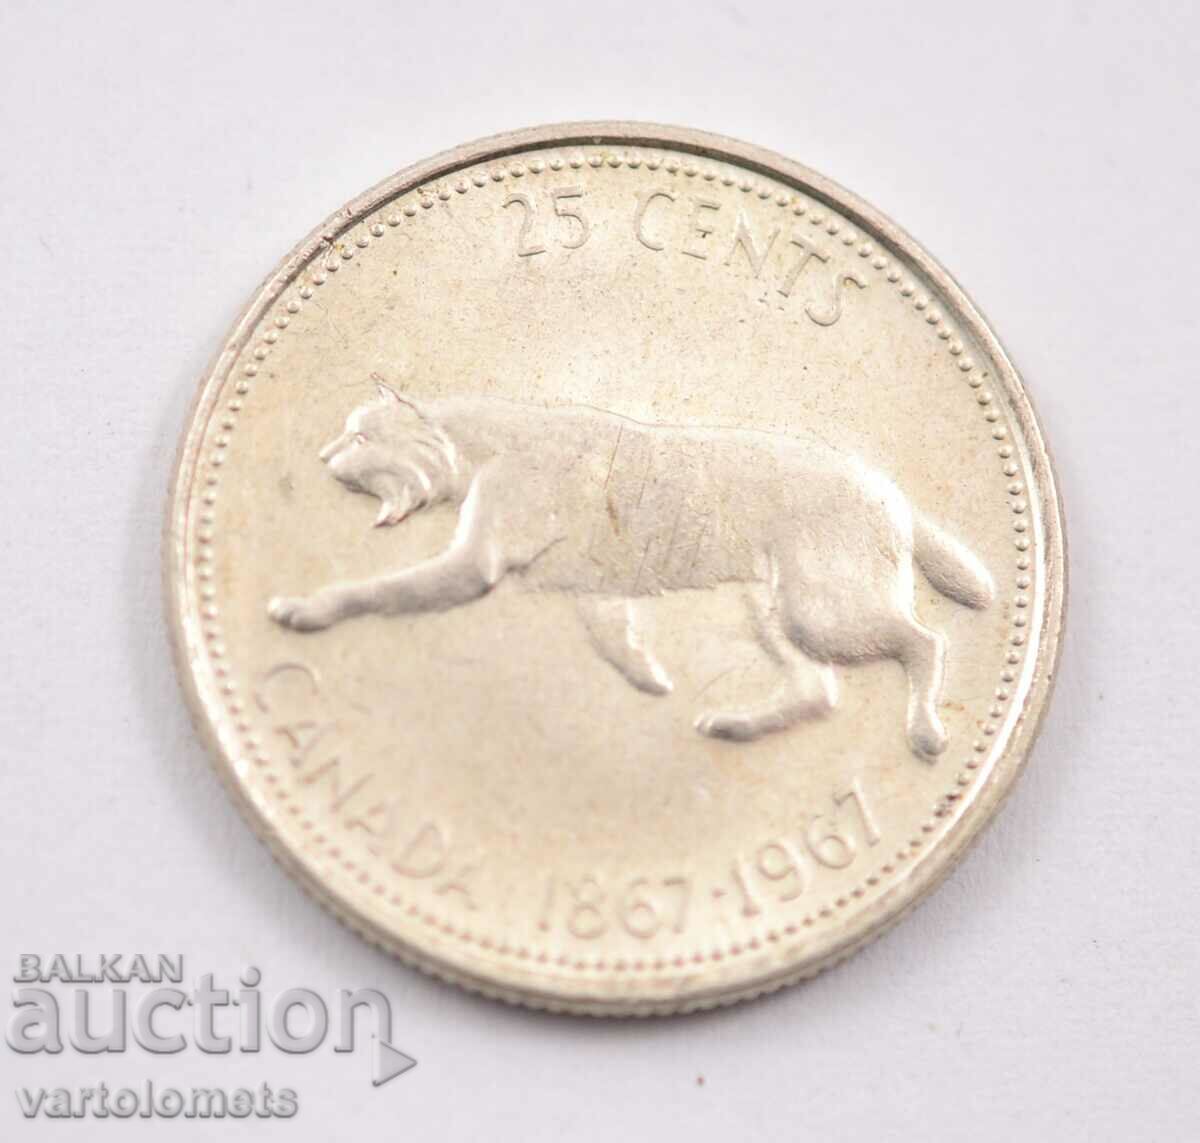 25 σεντ 1967 - Καναδάς, Ασήμι 0,800, 5,83 γρ., ø23,88 χλστ.